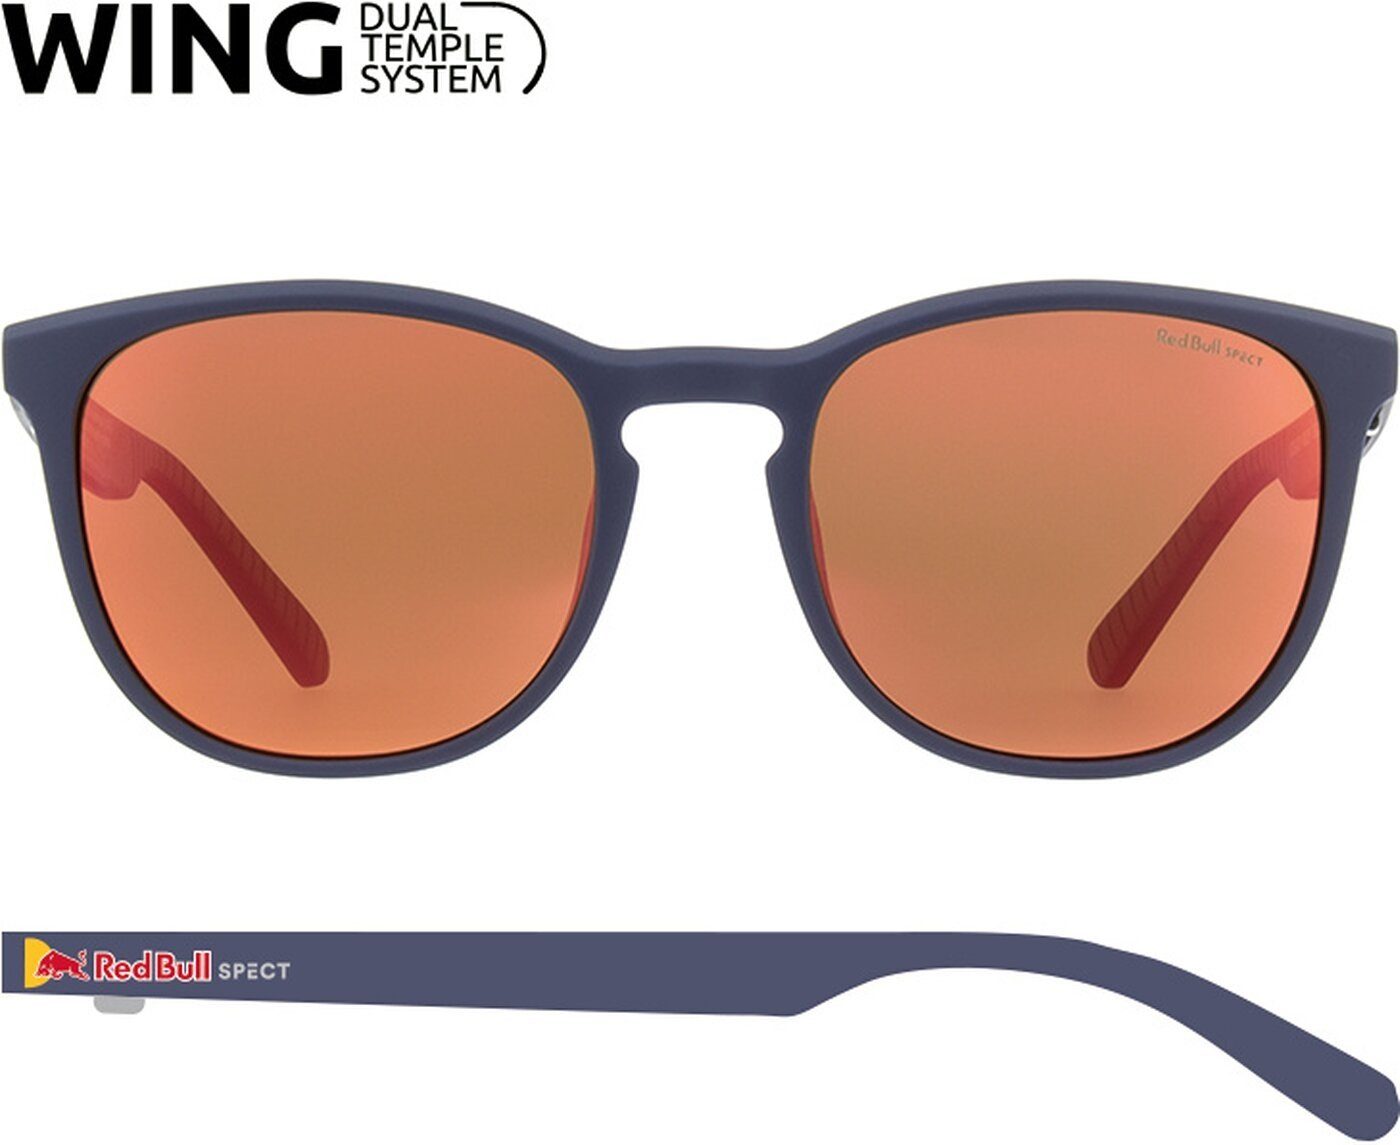 Red Bull Spect Sunglasses Sonnenbrille blue Bull SPECT STEADY/ Red 002P